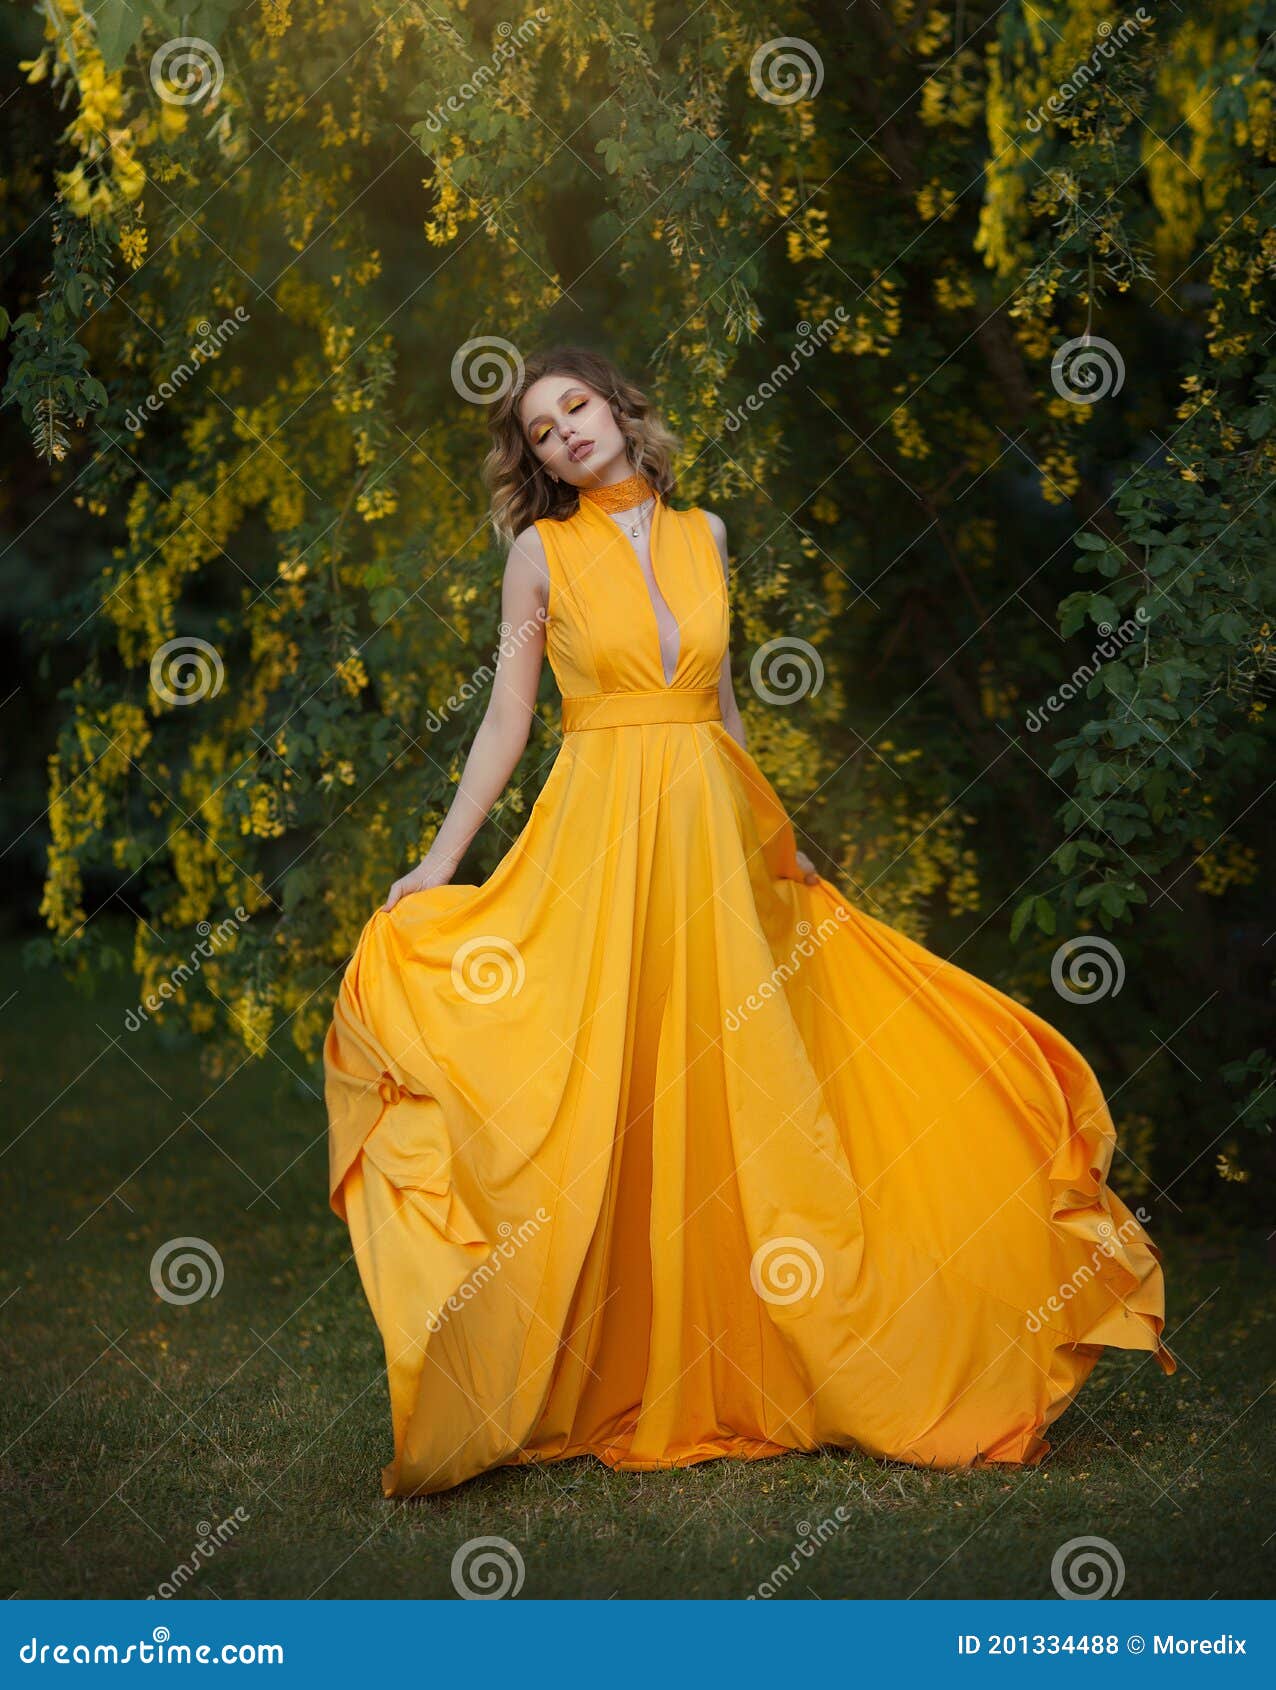 Mujer Vestido Largo Amarillo Que Bajo Un árbol En Auge Con Flores Amarillas Que Agitan El Paño De Seda Artístico Foto de archivo - Imagen de adulto, flores: 201334488